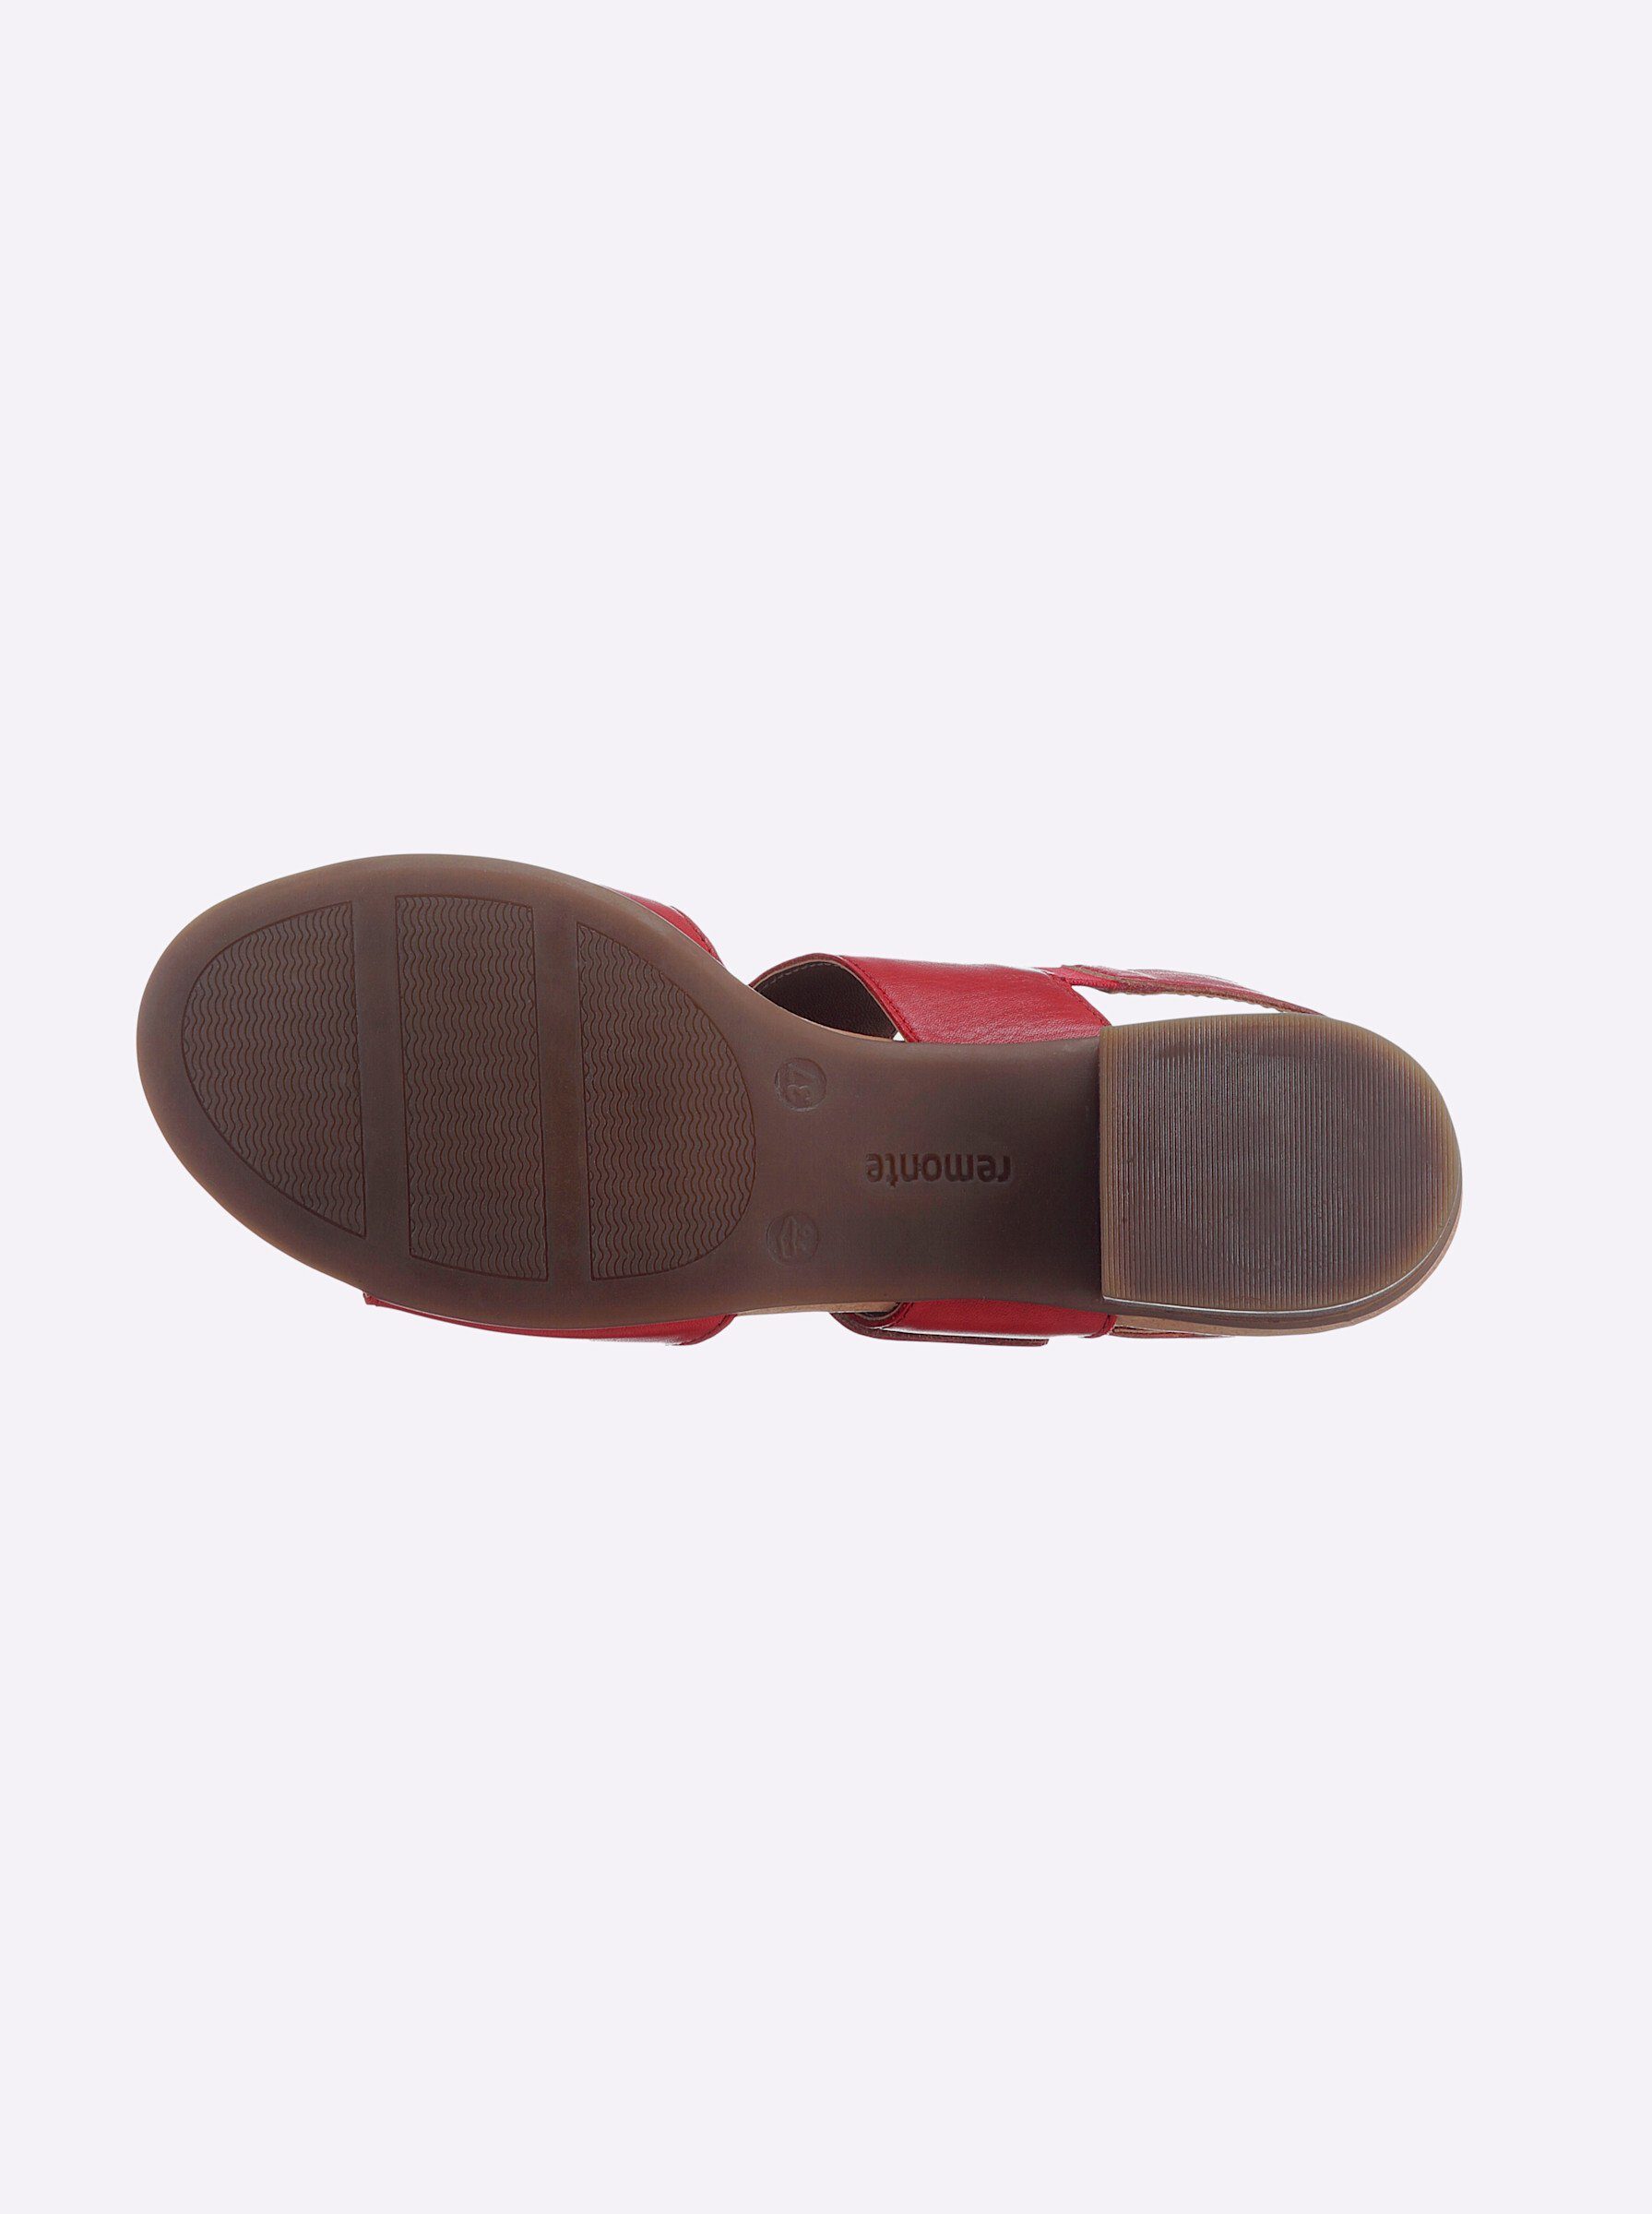 Sandalette rot Remonte (33)